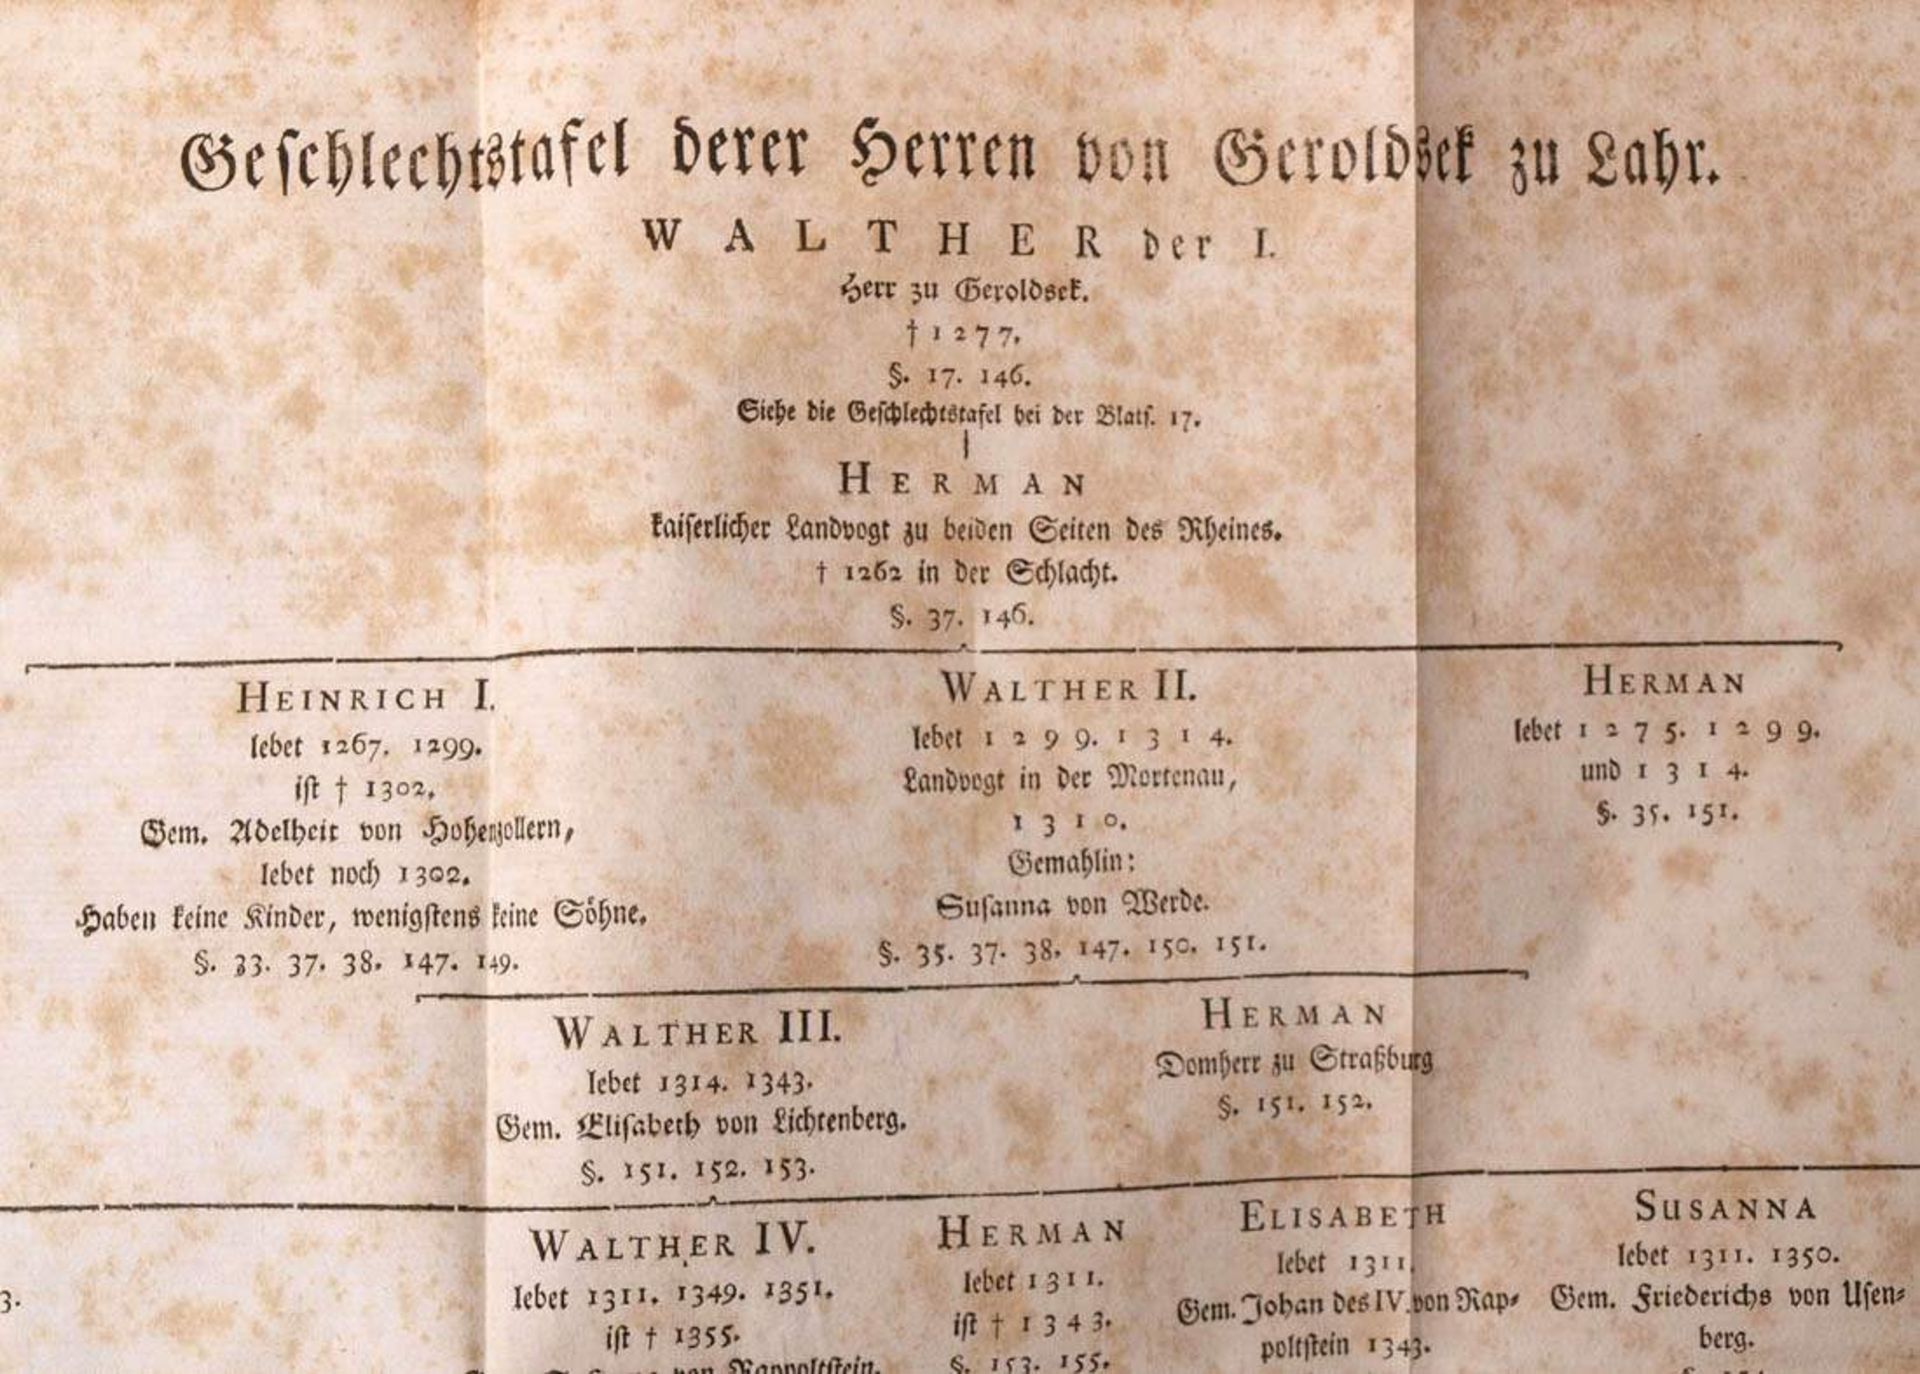 Geschichte des Hauses Geroldseck, Frankfurt und Leipzig, 1766Mit einigen Textillustrationen und - Bild 10 aus 13